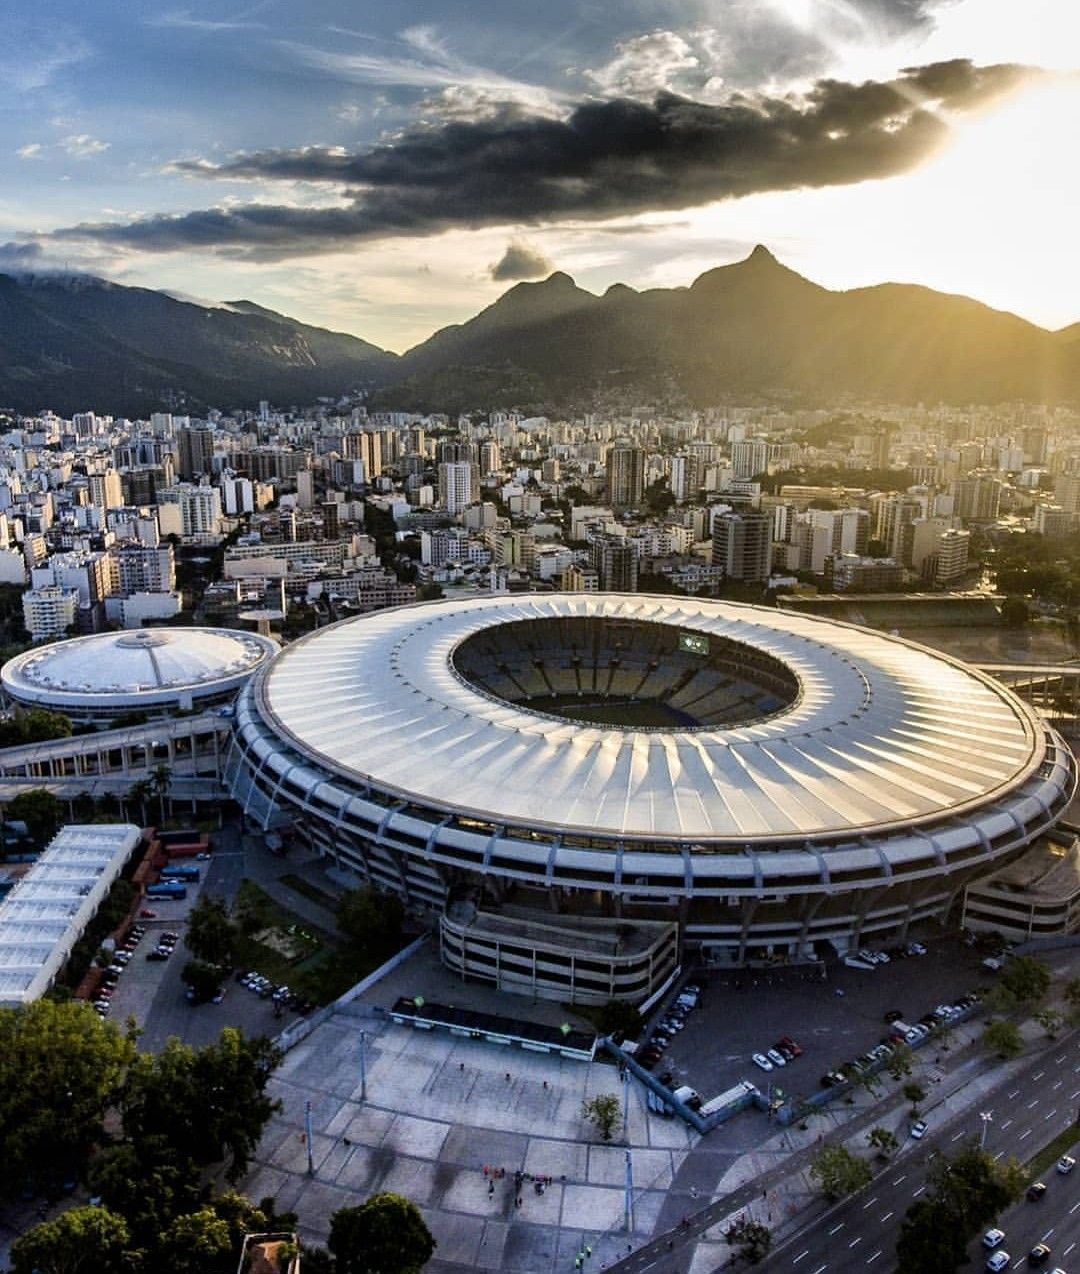 Estádio Jornalista Mário Filho, mais conhecido como Maracanã